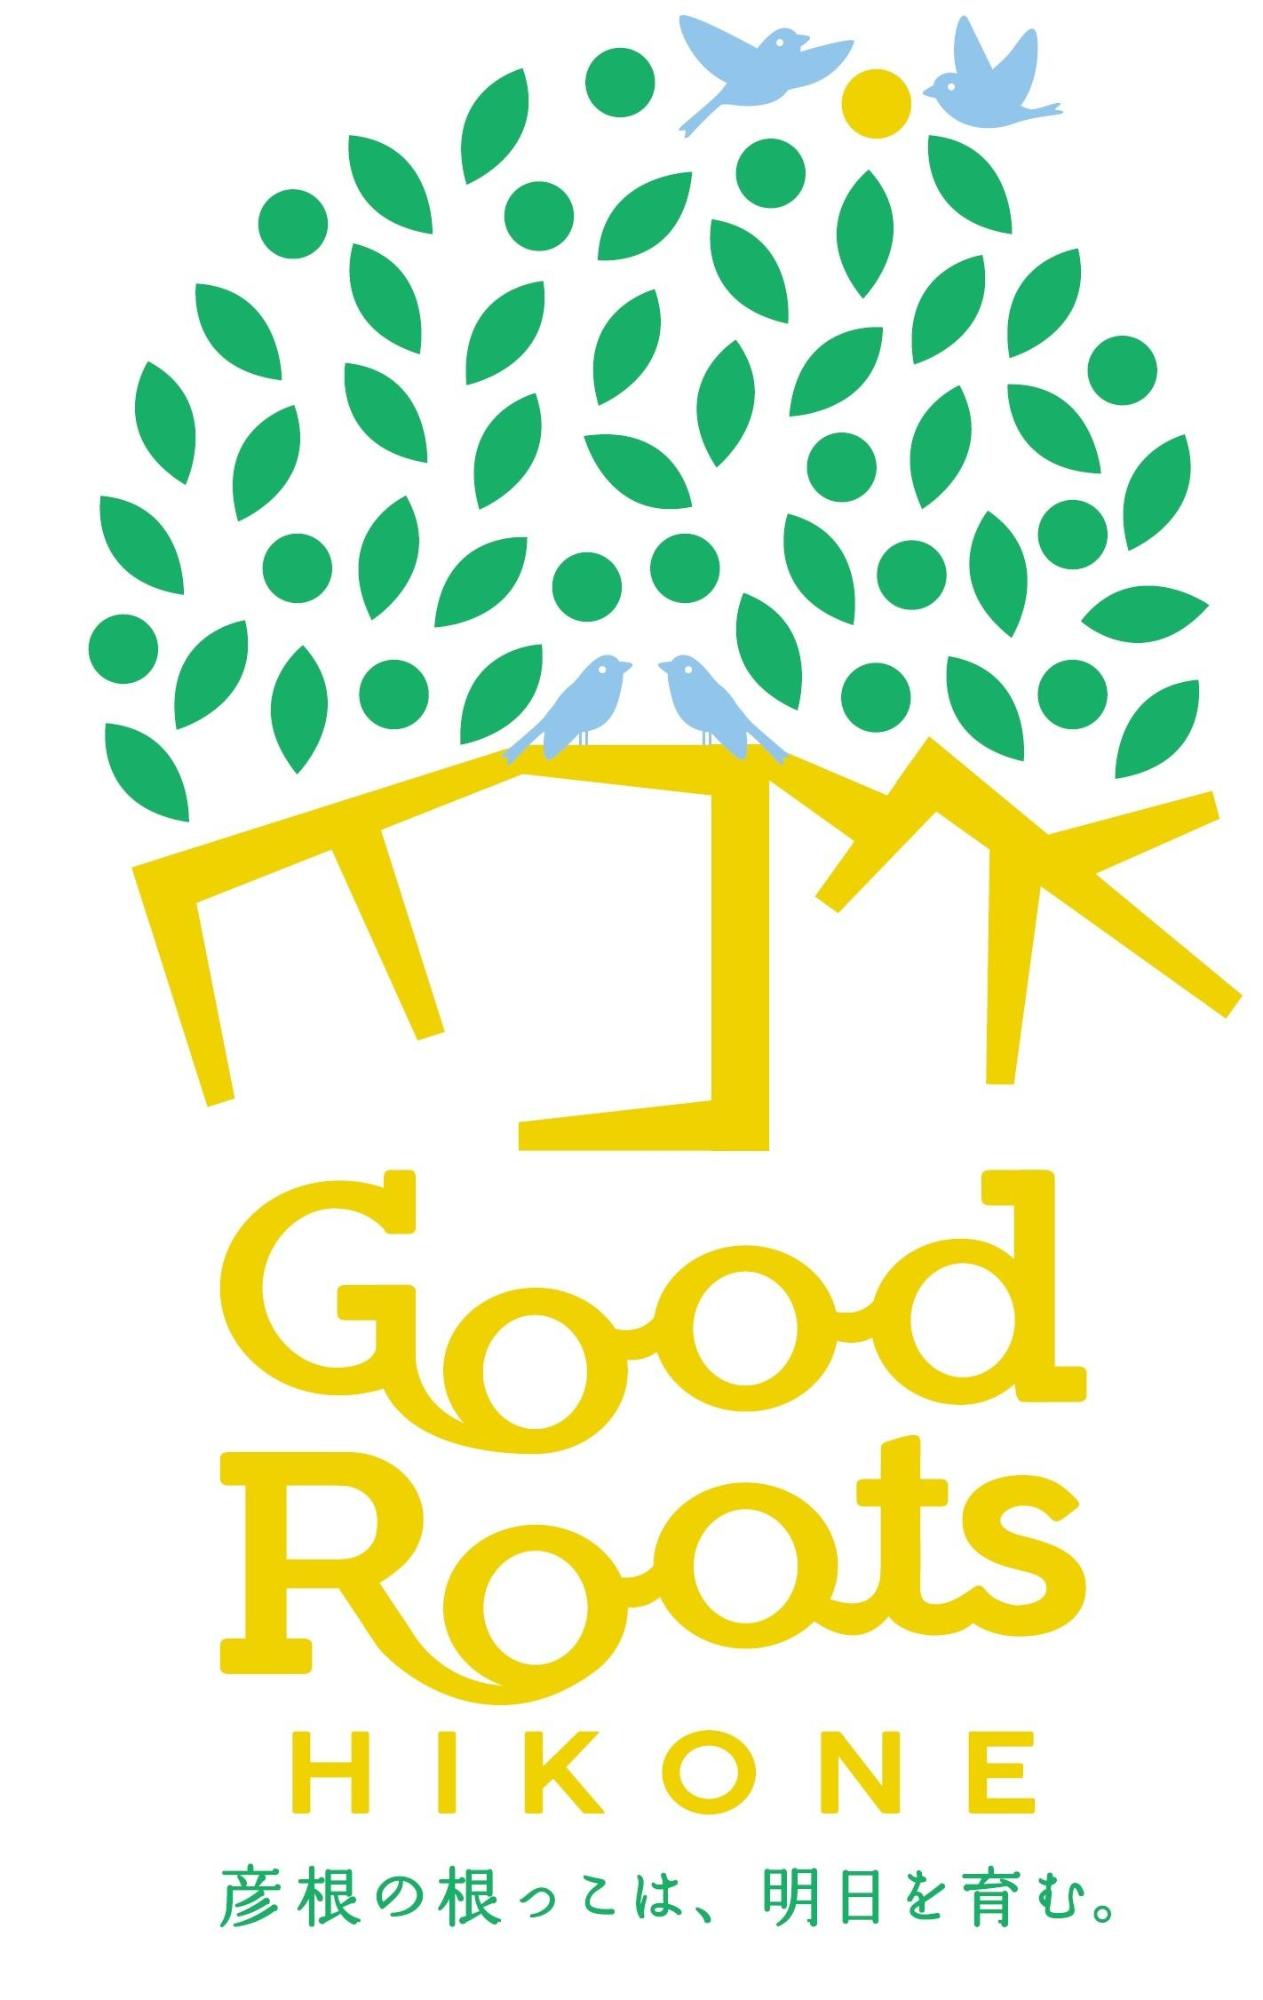 GoodRootsHIKONE彦根の根っこは、明日を育む。彦根市シティプロモーションのロゴマーク